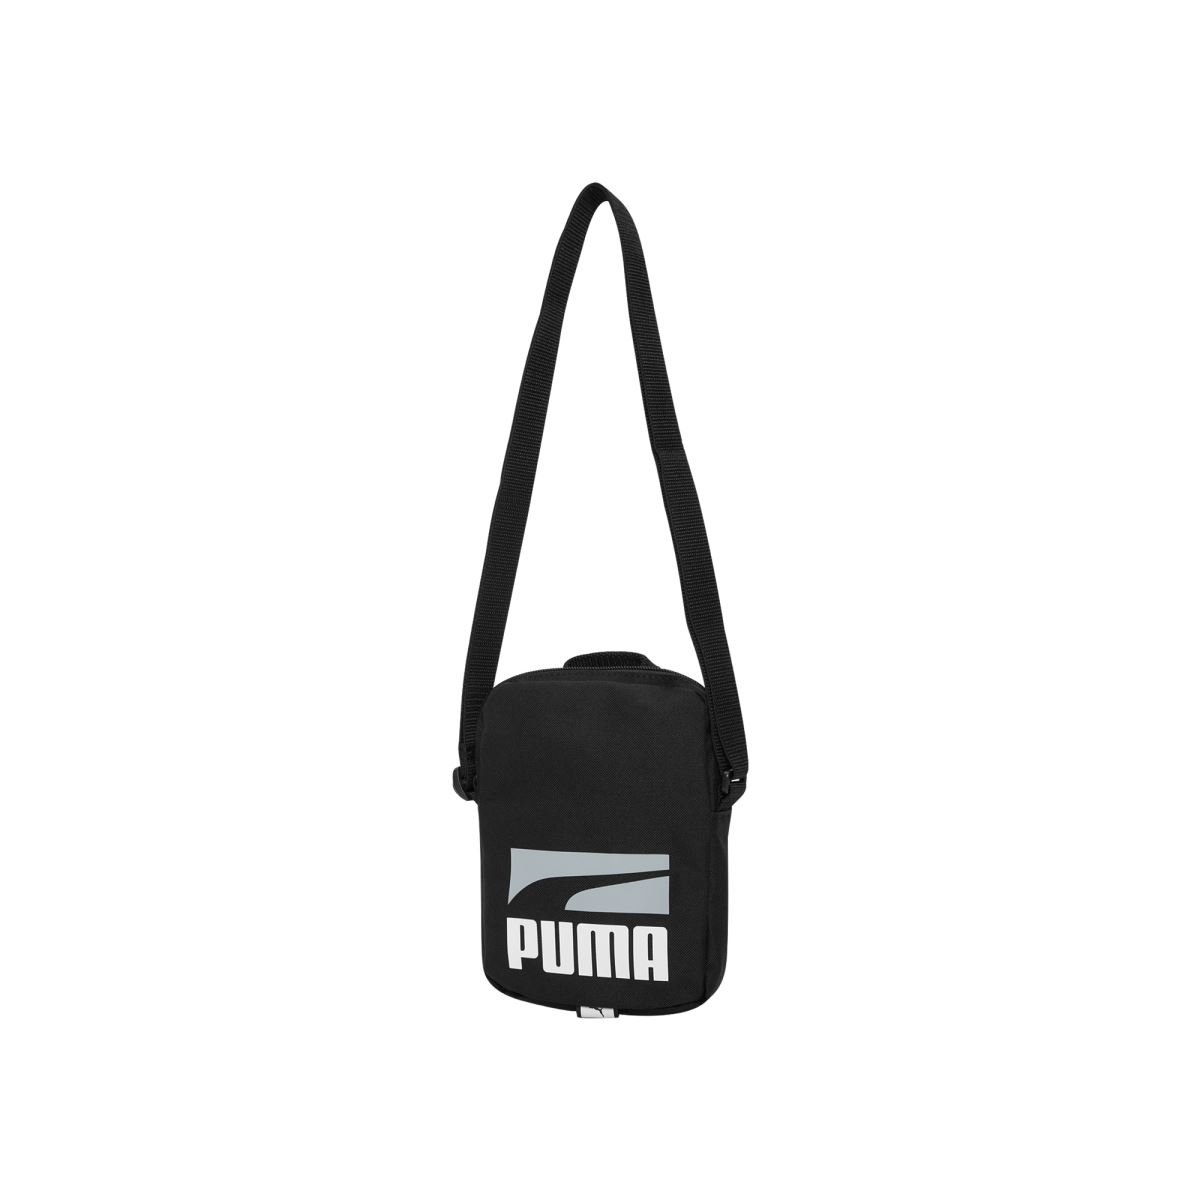 Túi xách Puma đeo vai cỡ nhỏ PLUS PORTABLE 078392